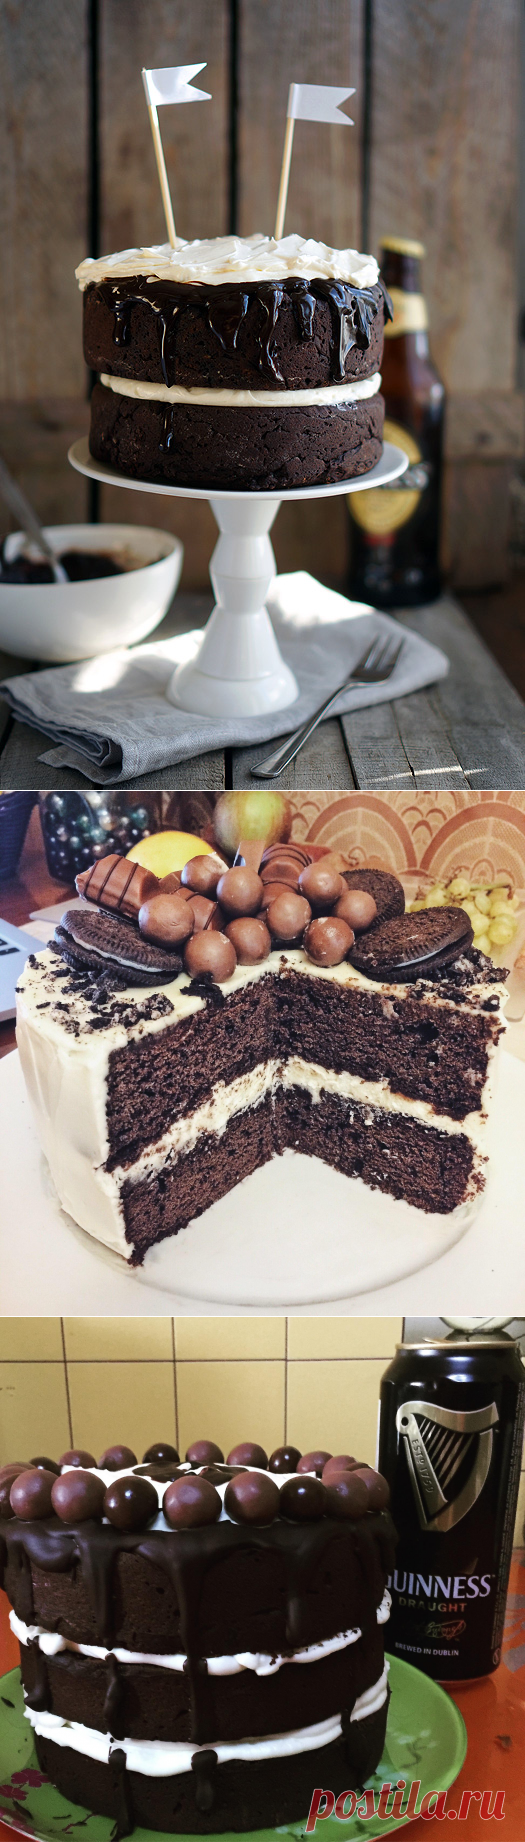 Шоколадный торт с Гиннессом - Andy Chef - блог о еде и путешествиях, пошаговые рецепты, интернет-магазин для кондитеров